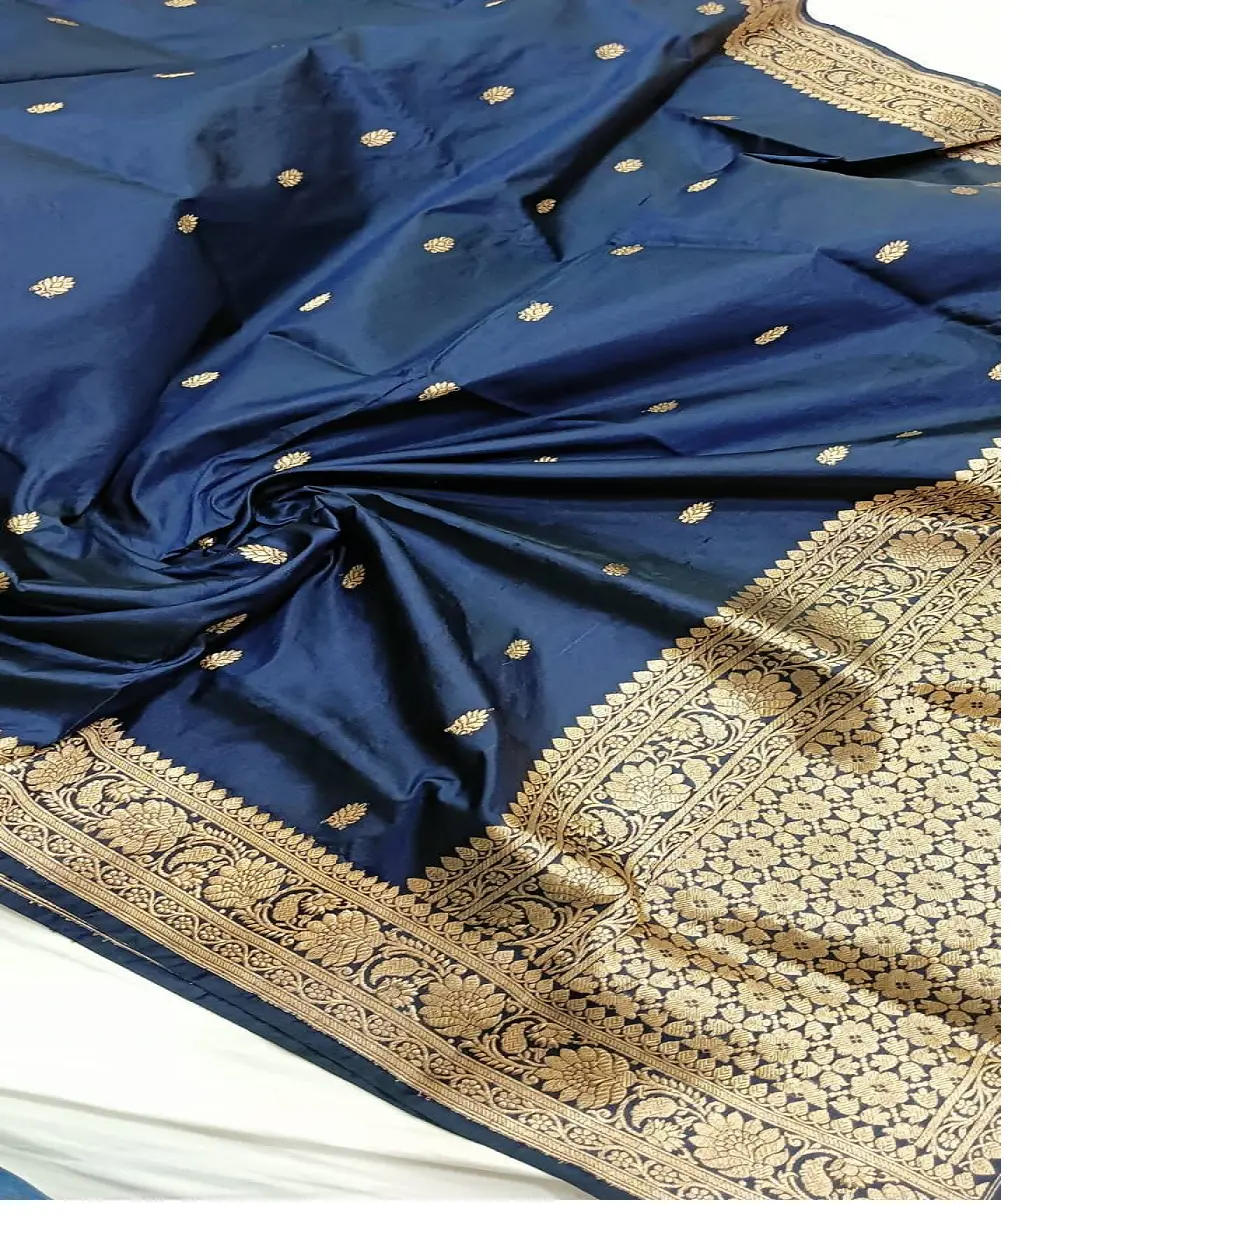 Saris de brocado de seda pura hechos a medida en pequeños motivos florales de color azul real en longitudes de 5 metros para tiendas de Sari para reventa